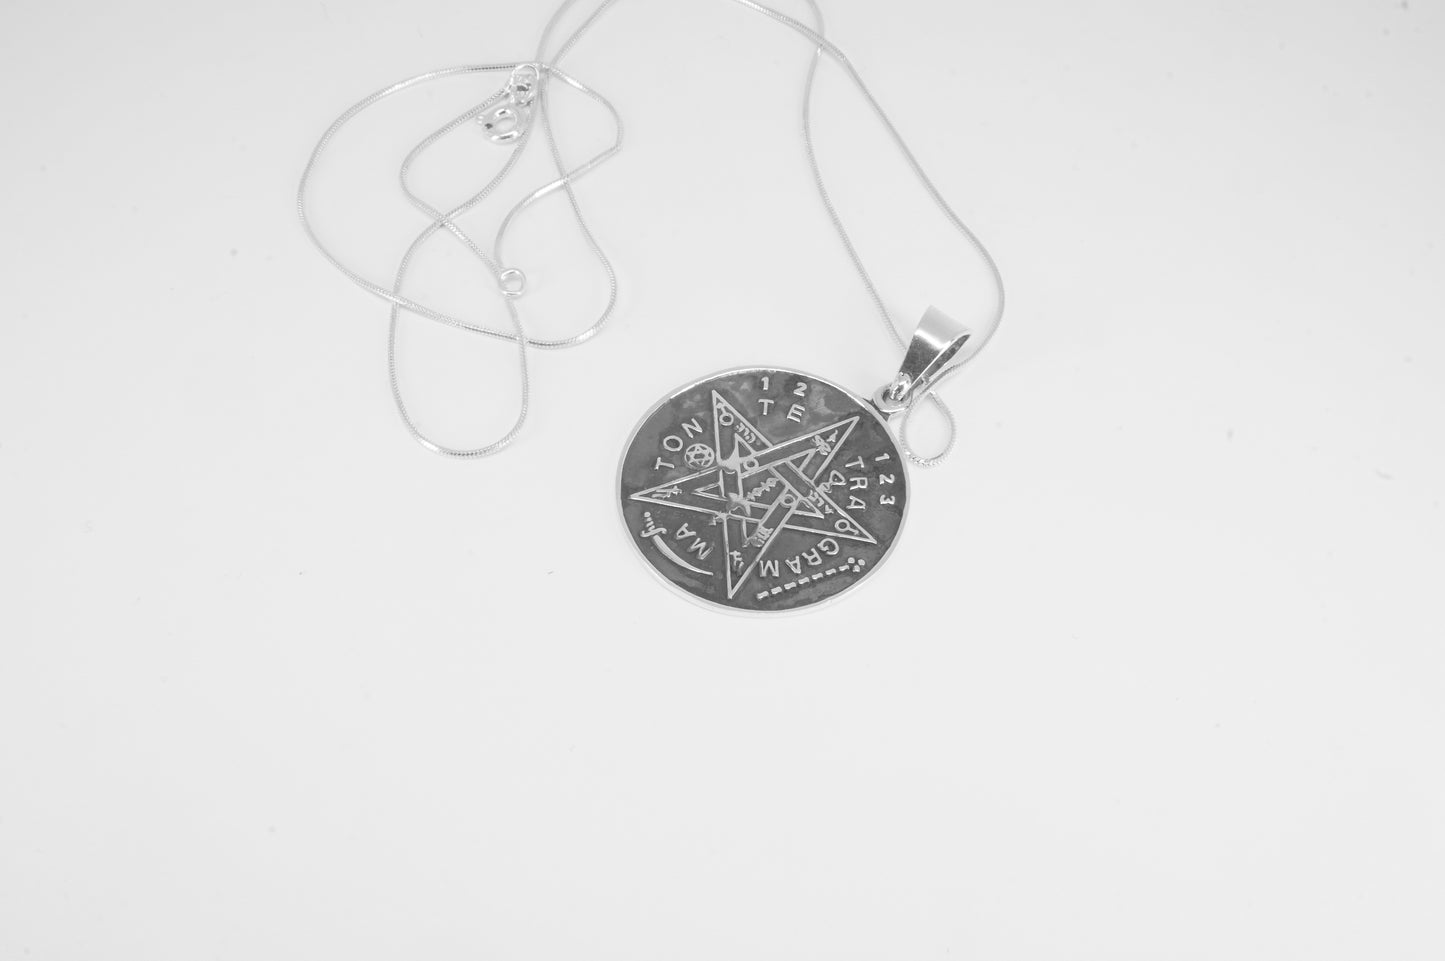 Dije de plata solida 925, Tetragramatron Sólido con cadena incluÍda